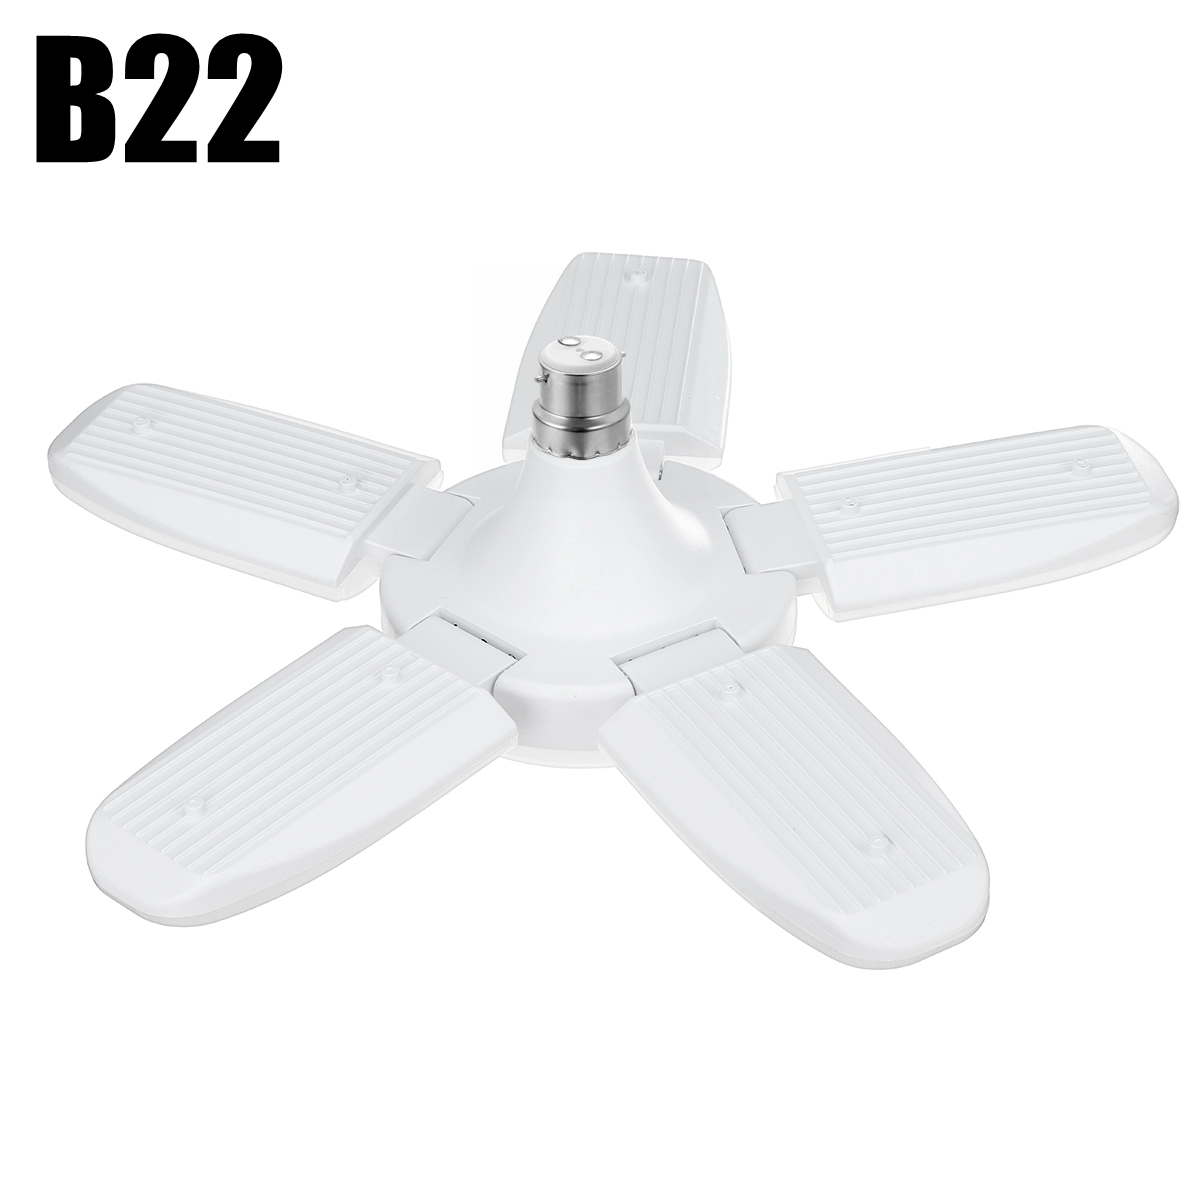 E27B22-Deformable-LED-Garage-Light-Bulb-80W-SMD2835-Ceiling-Fixture-Home-Shop-Workshop-Lamp-85-265V2-1737129-2